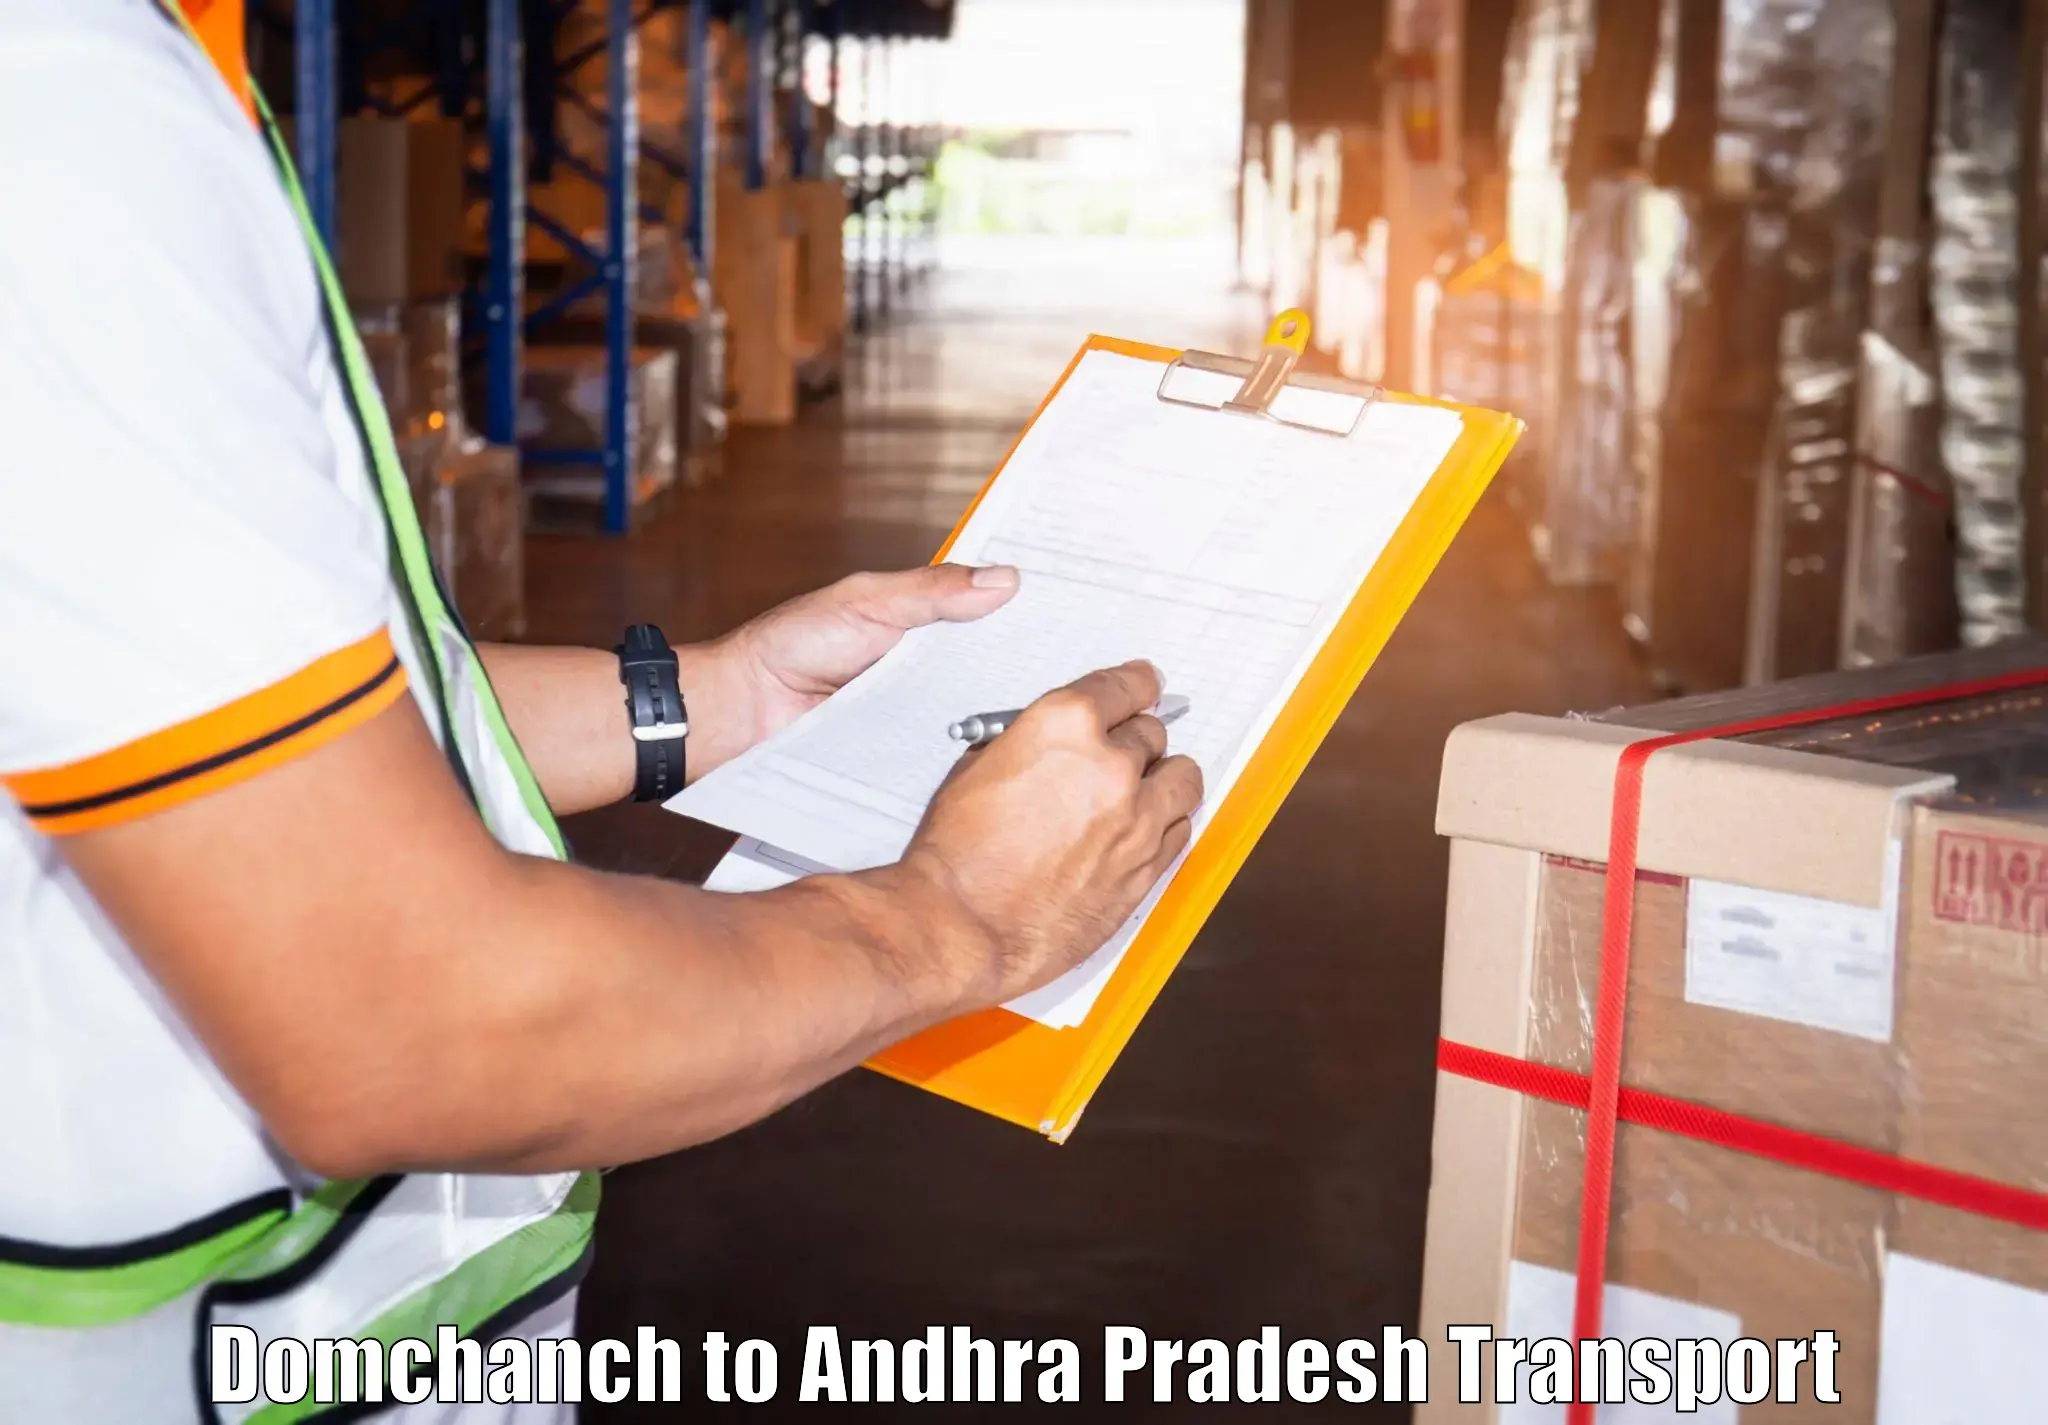 Vehicle courier services Domchanch to Guntur